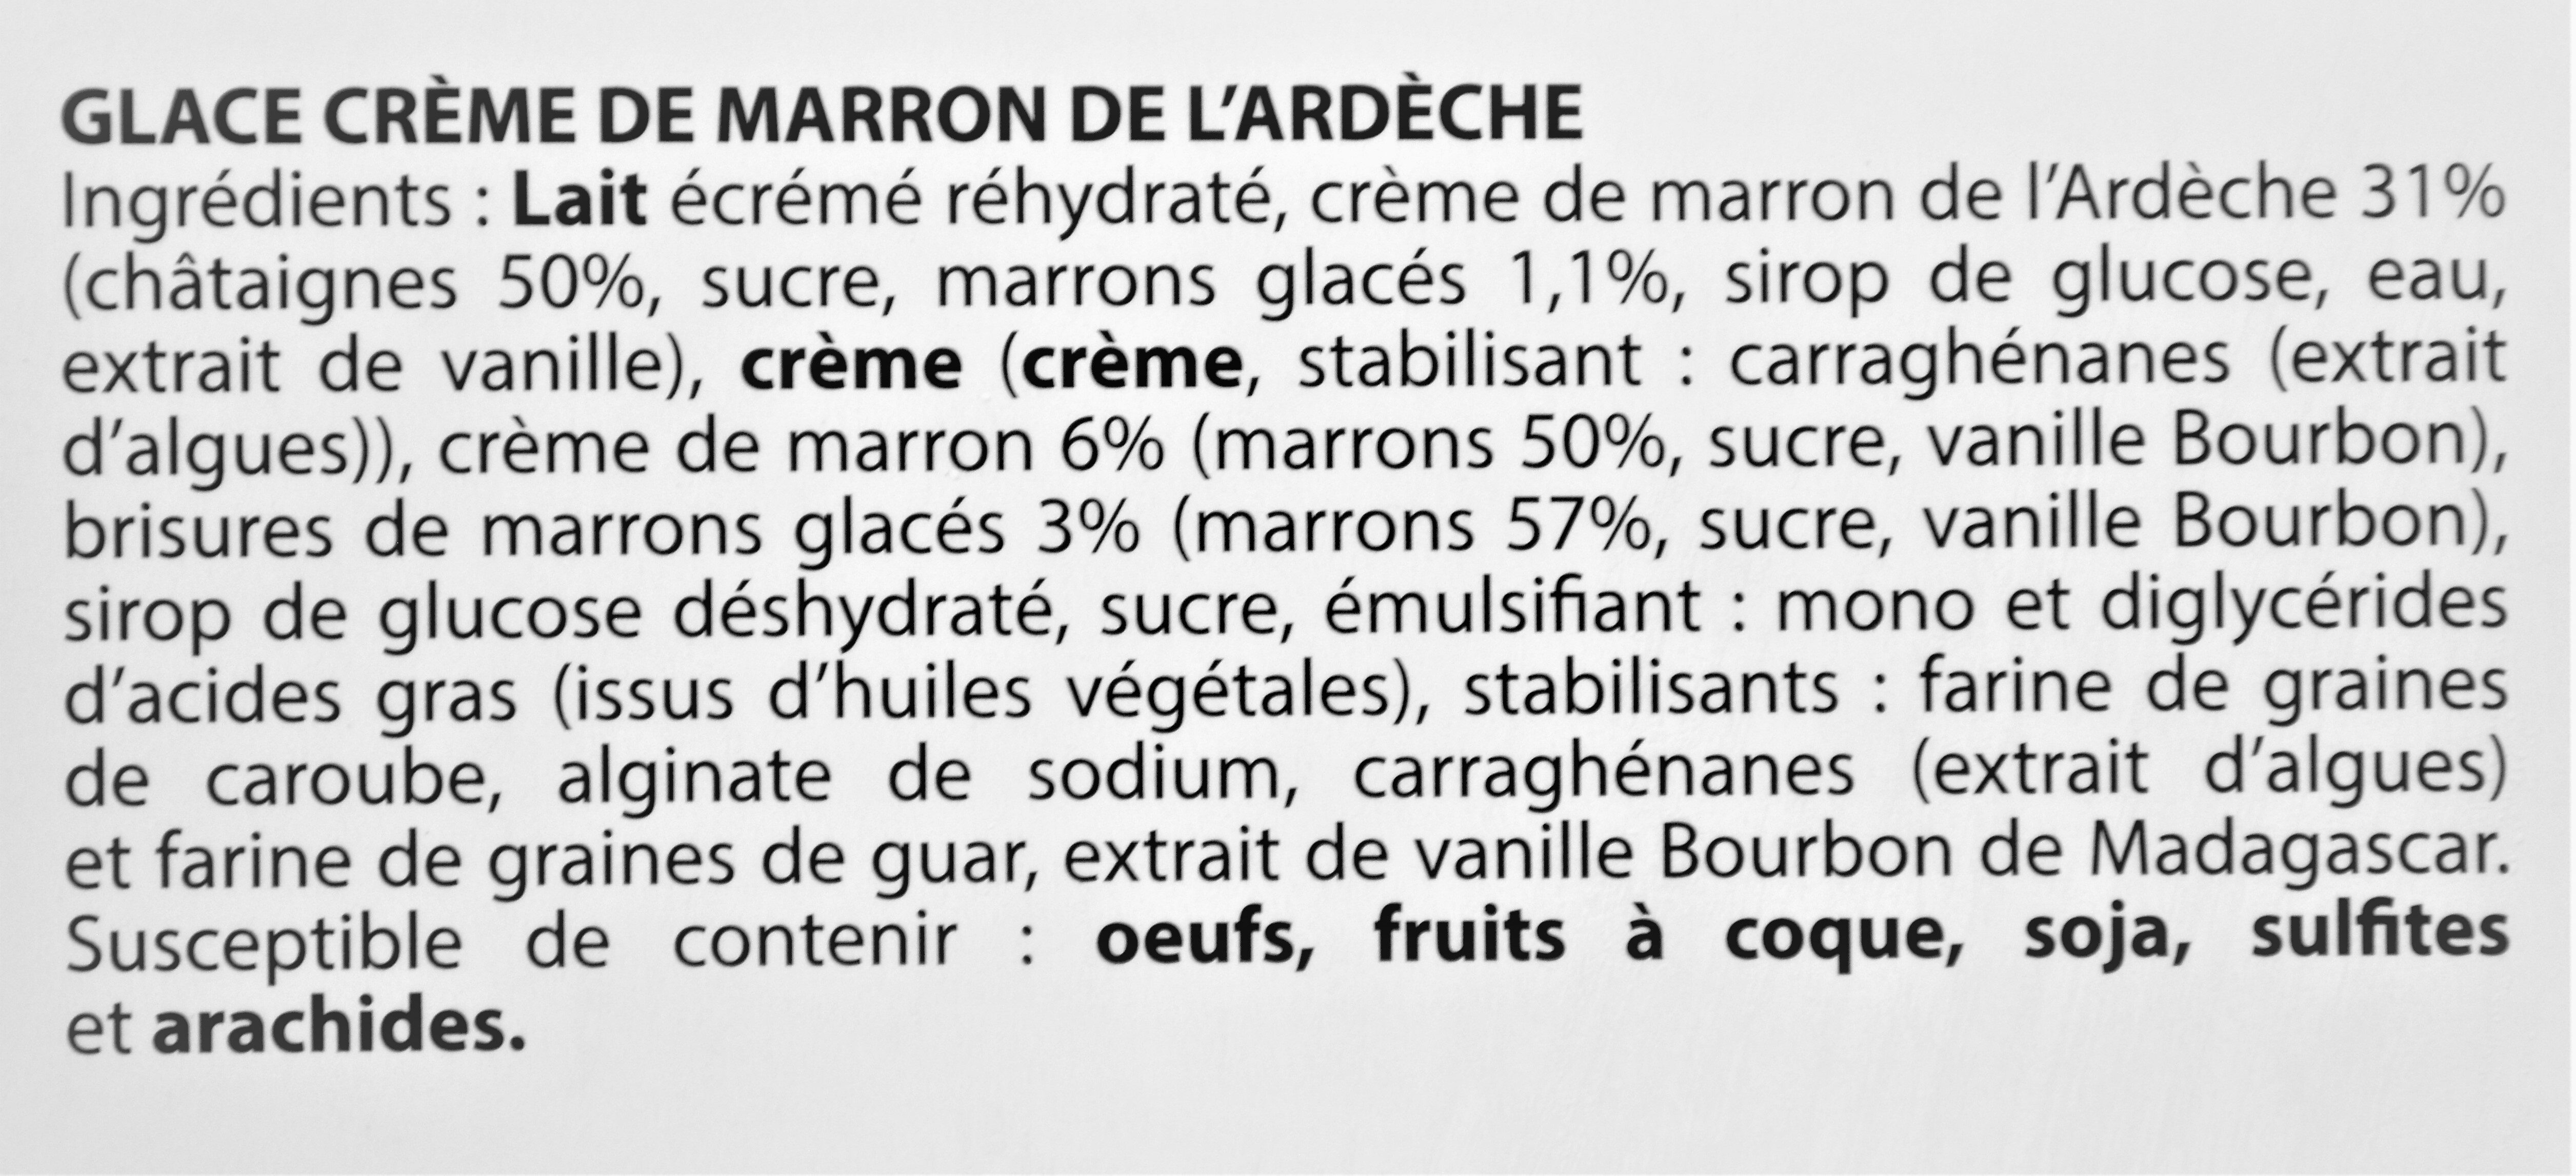 Glace CREME DE MARRON de l'Ardèche, morceaux de marrons glacés - Ingredients - fr